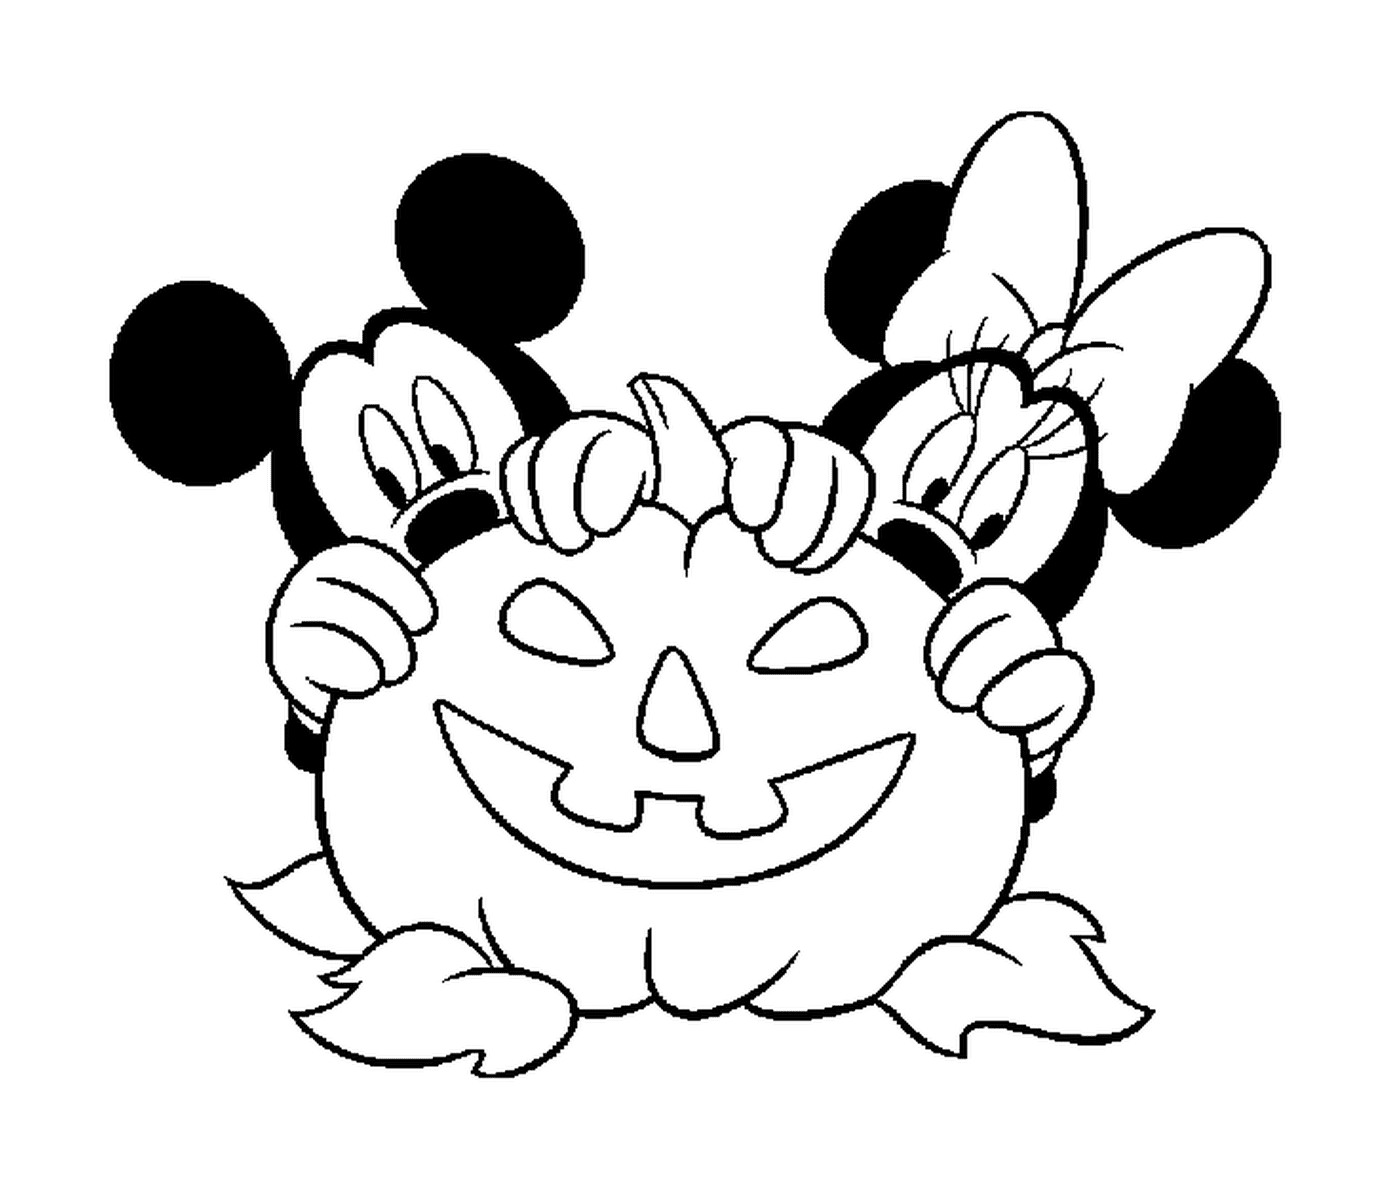   Mickey et Minnie se cachent derrière une citrouille Disney 